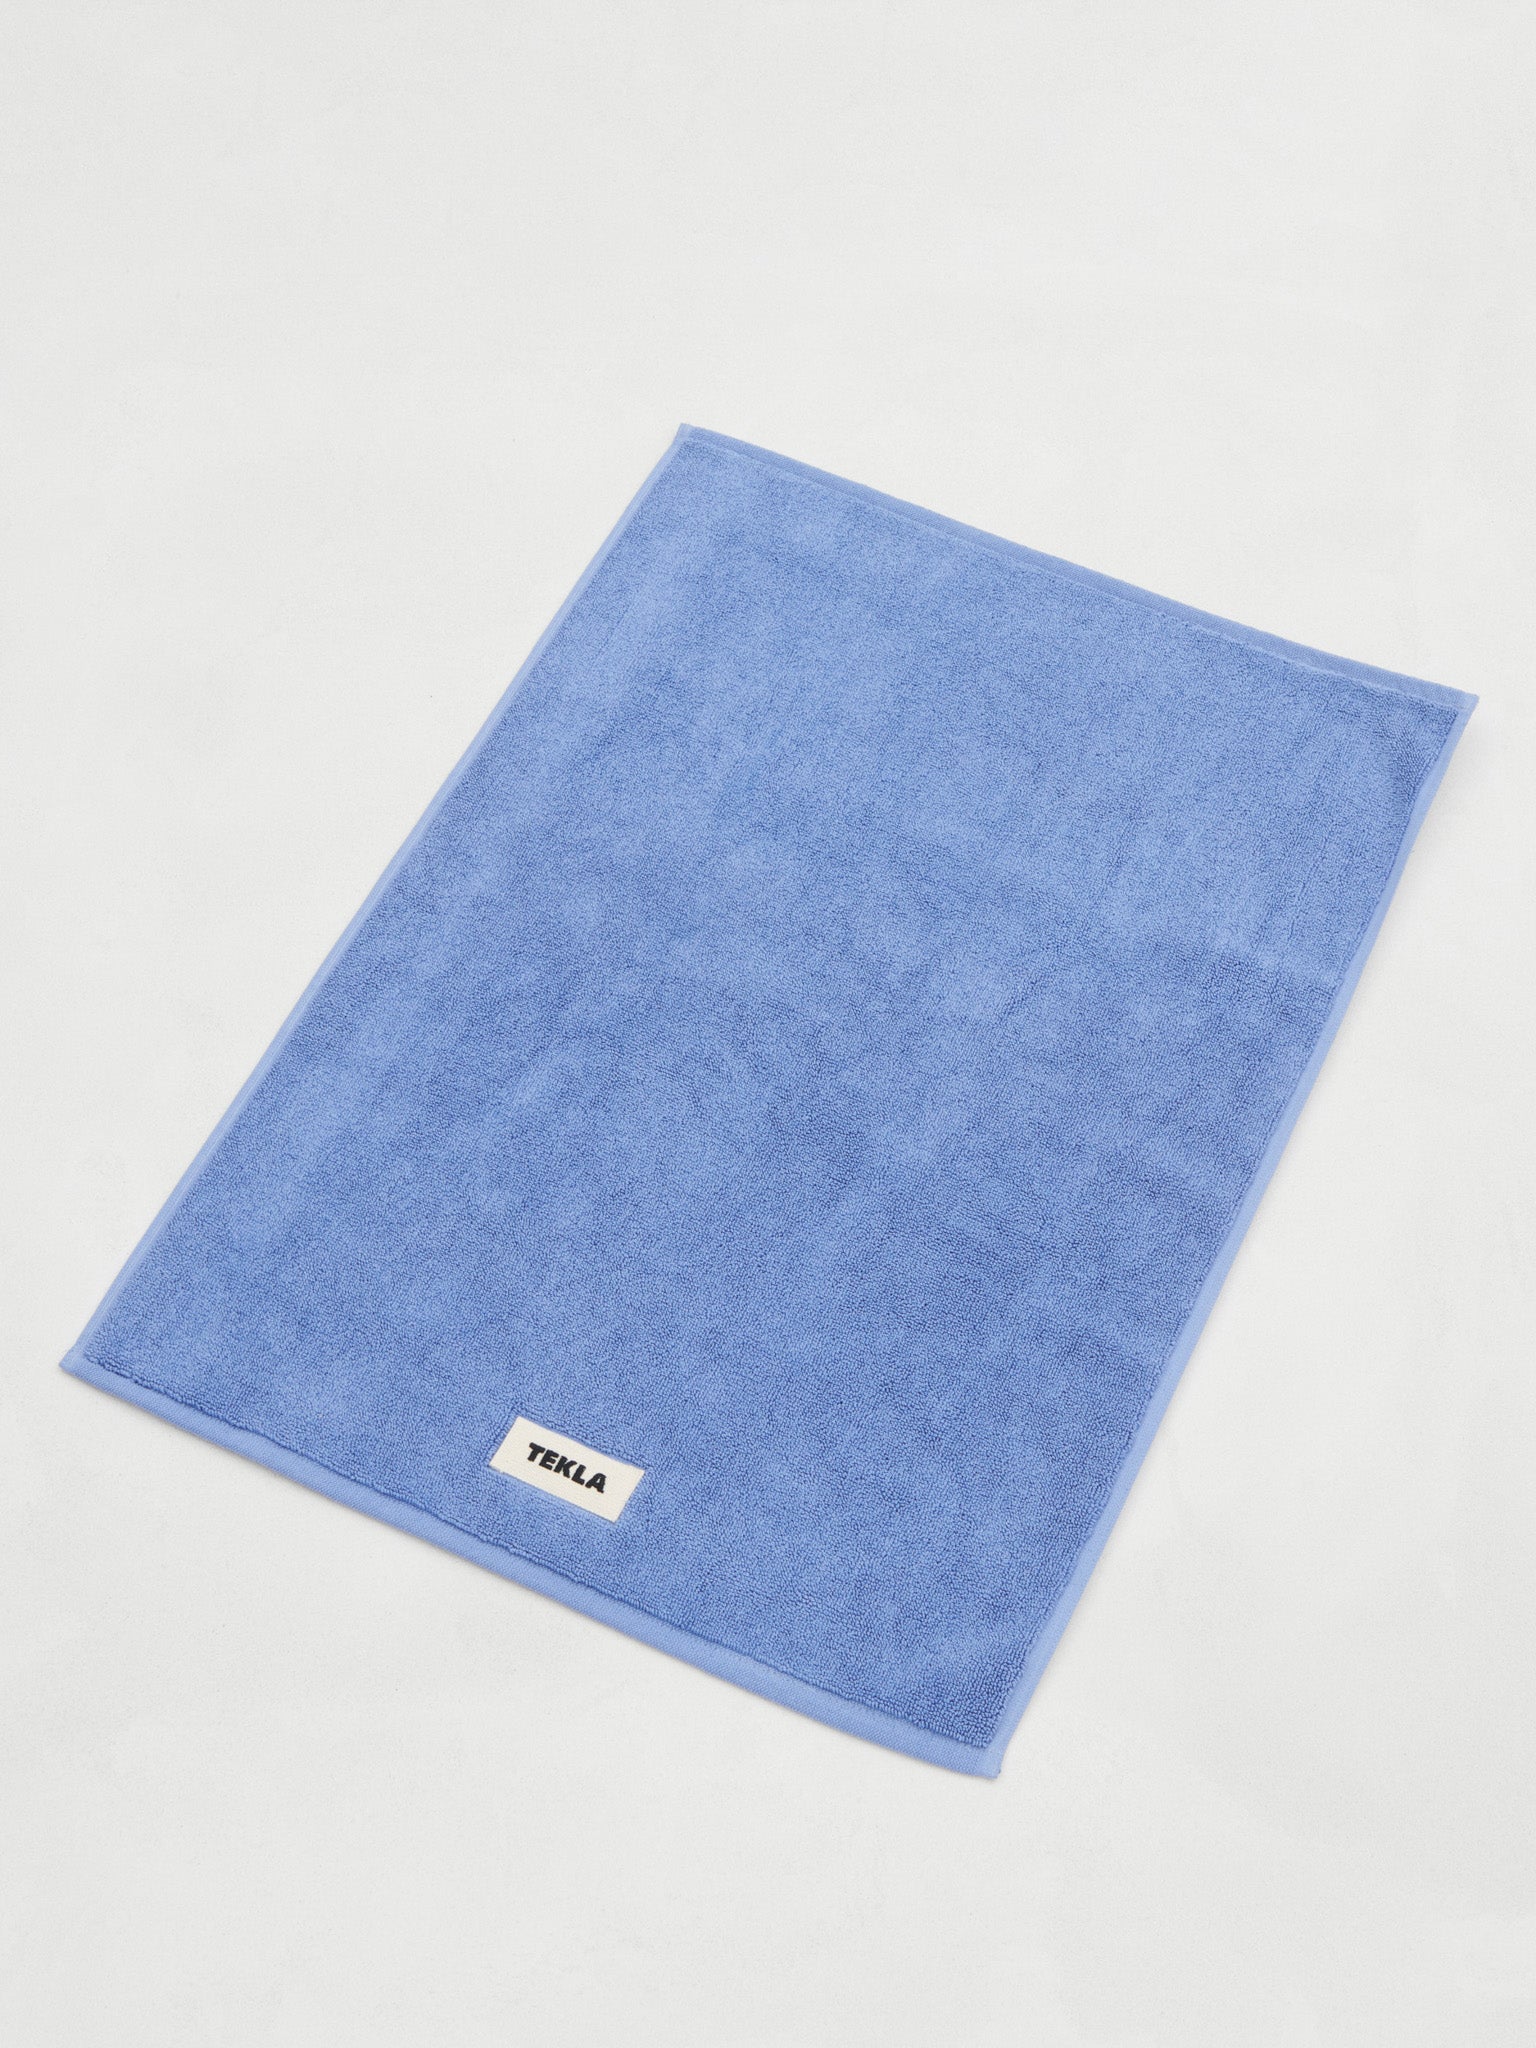 Tekla - Bath Mat in Clear Blue